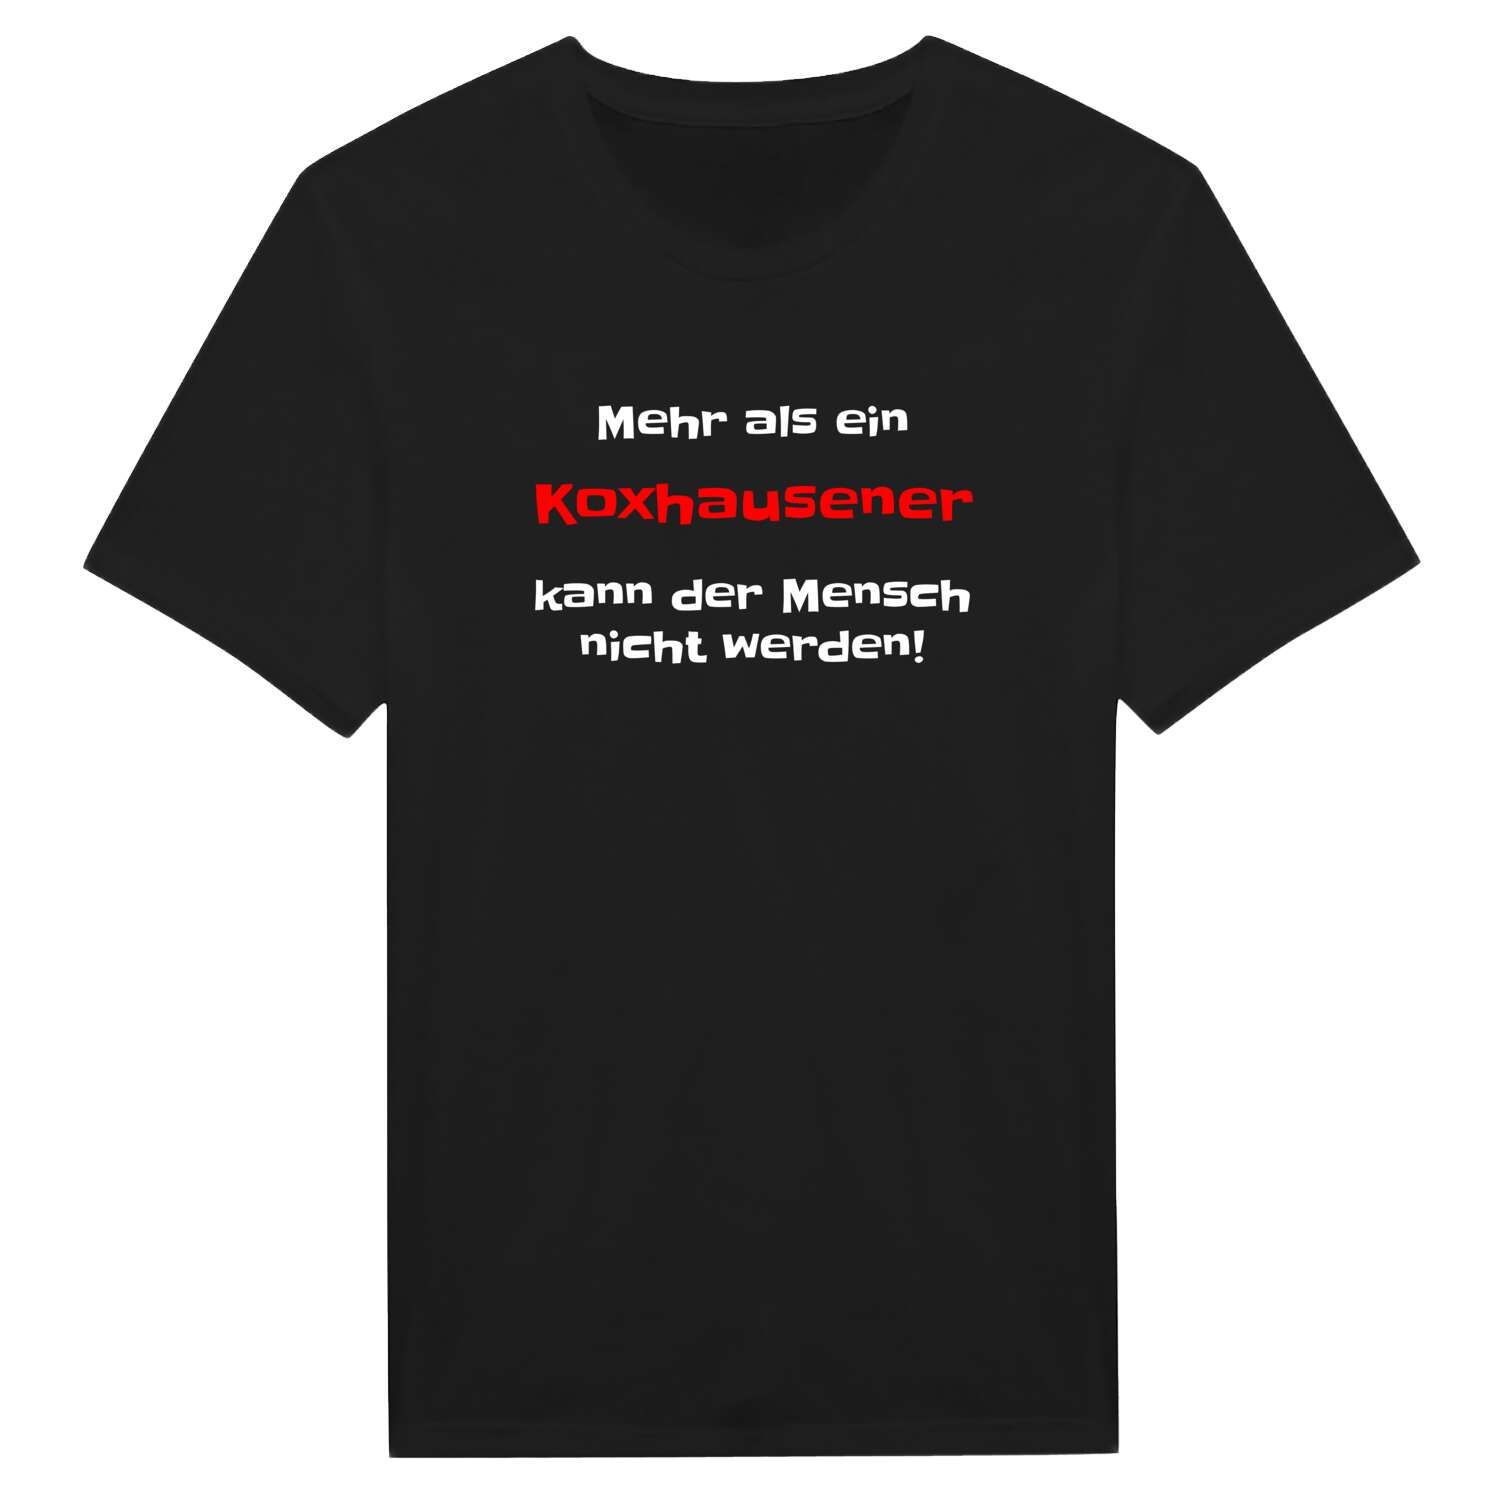 Koxhausen T-Shirt »Mehr als ein«